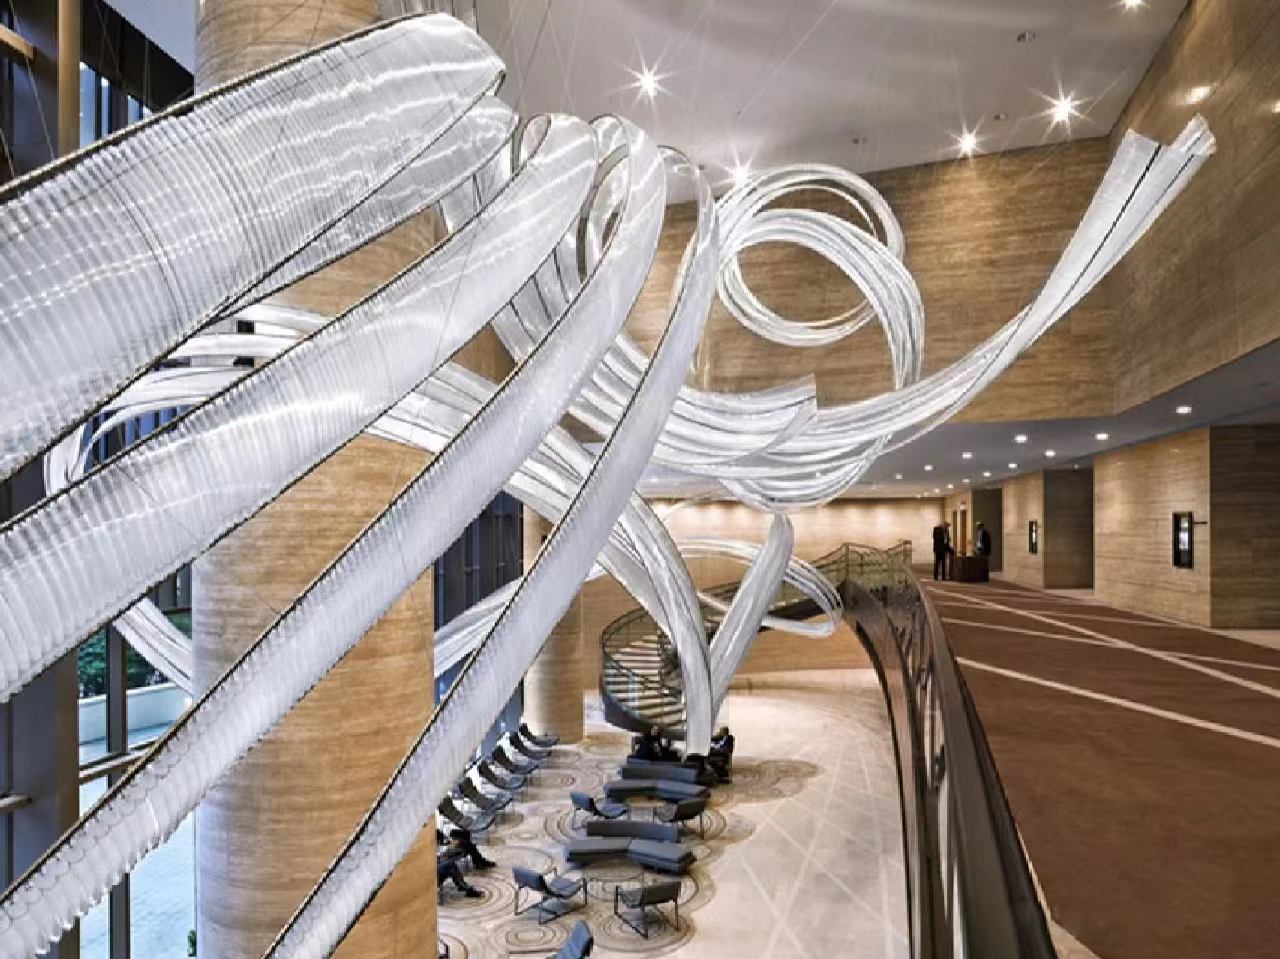 DUTTI LED Long Crystal Streamer Chandelier: Modern Unique Design Pendant Ceiling Lighting OEM/ODM for Hotel Lobby